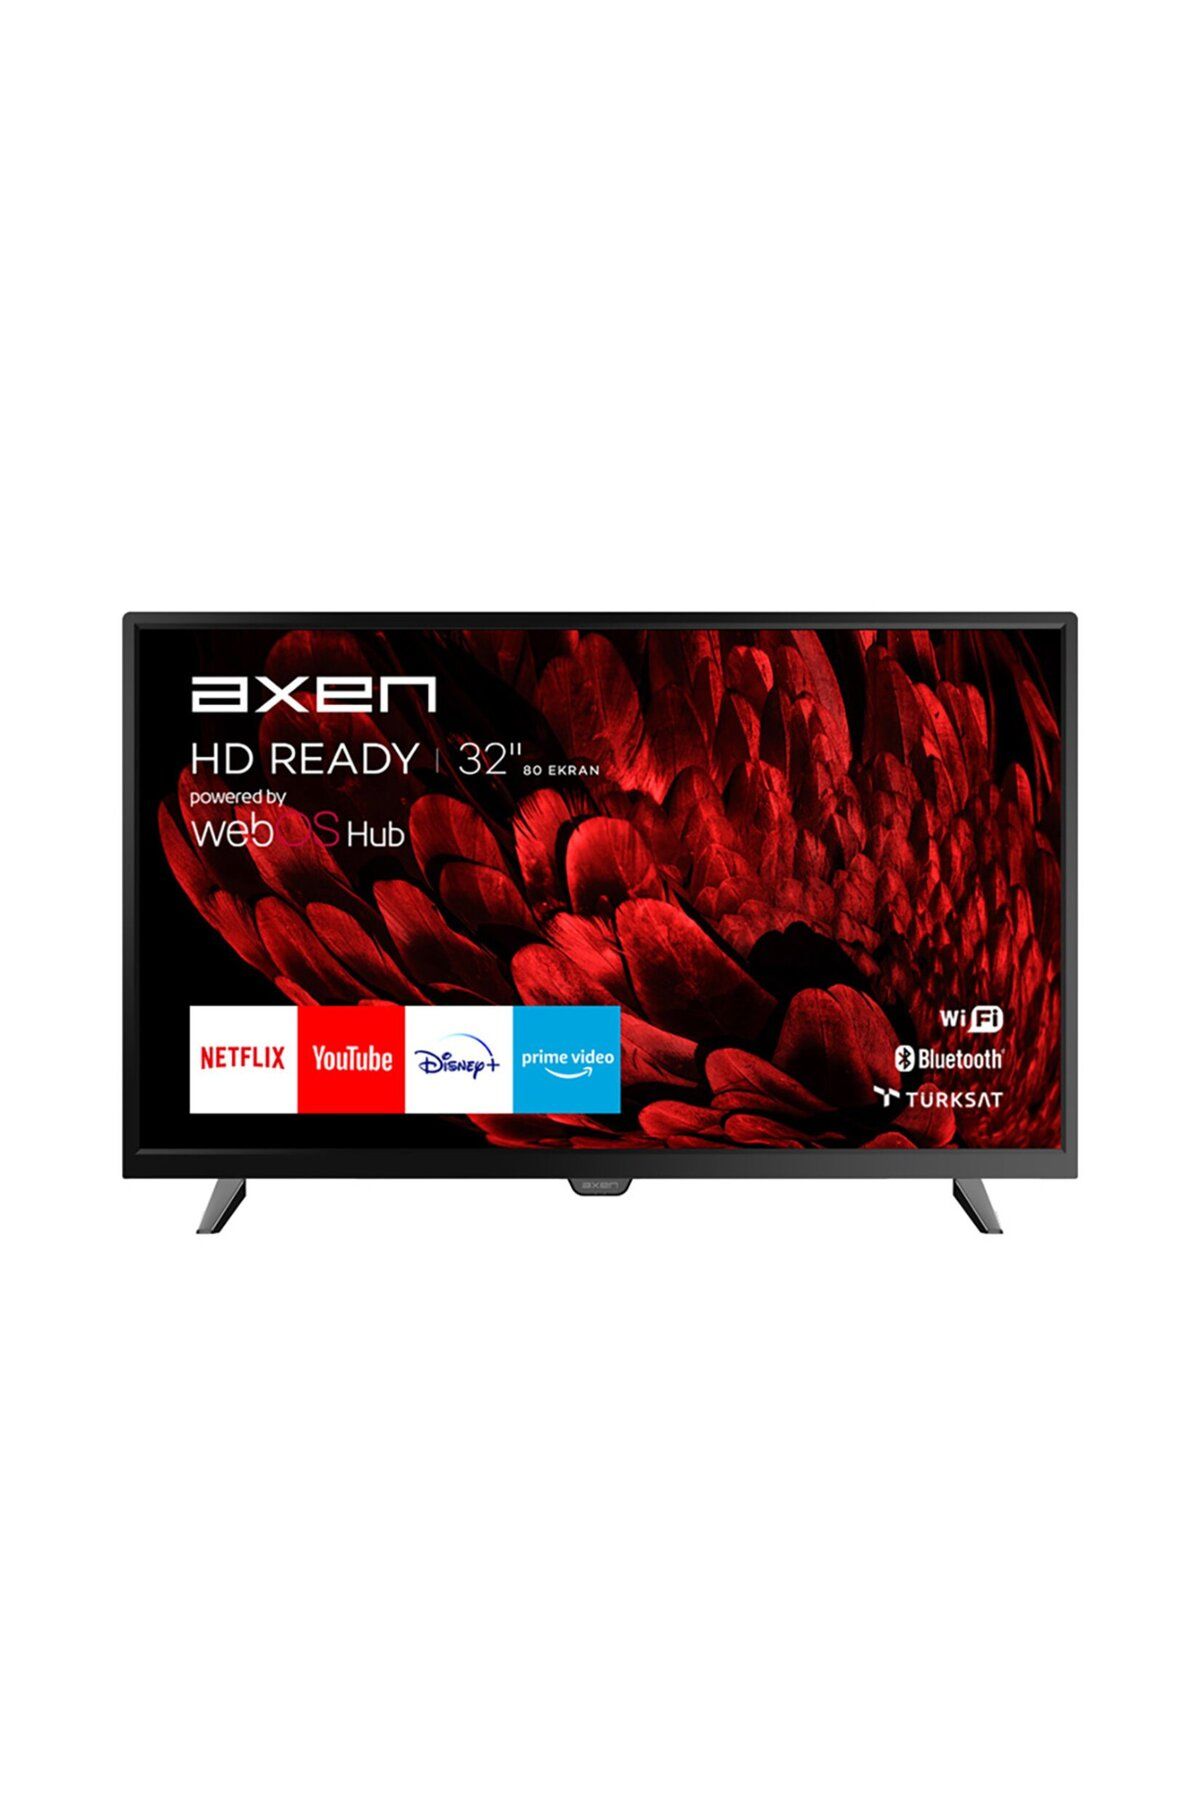 Axen Ax32dal540 82ekr Hd Ready Webos 2.0 Led Tv